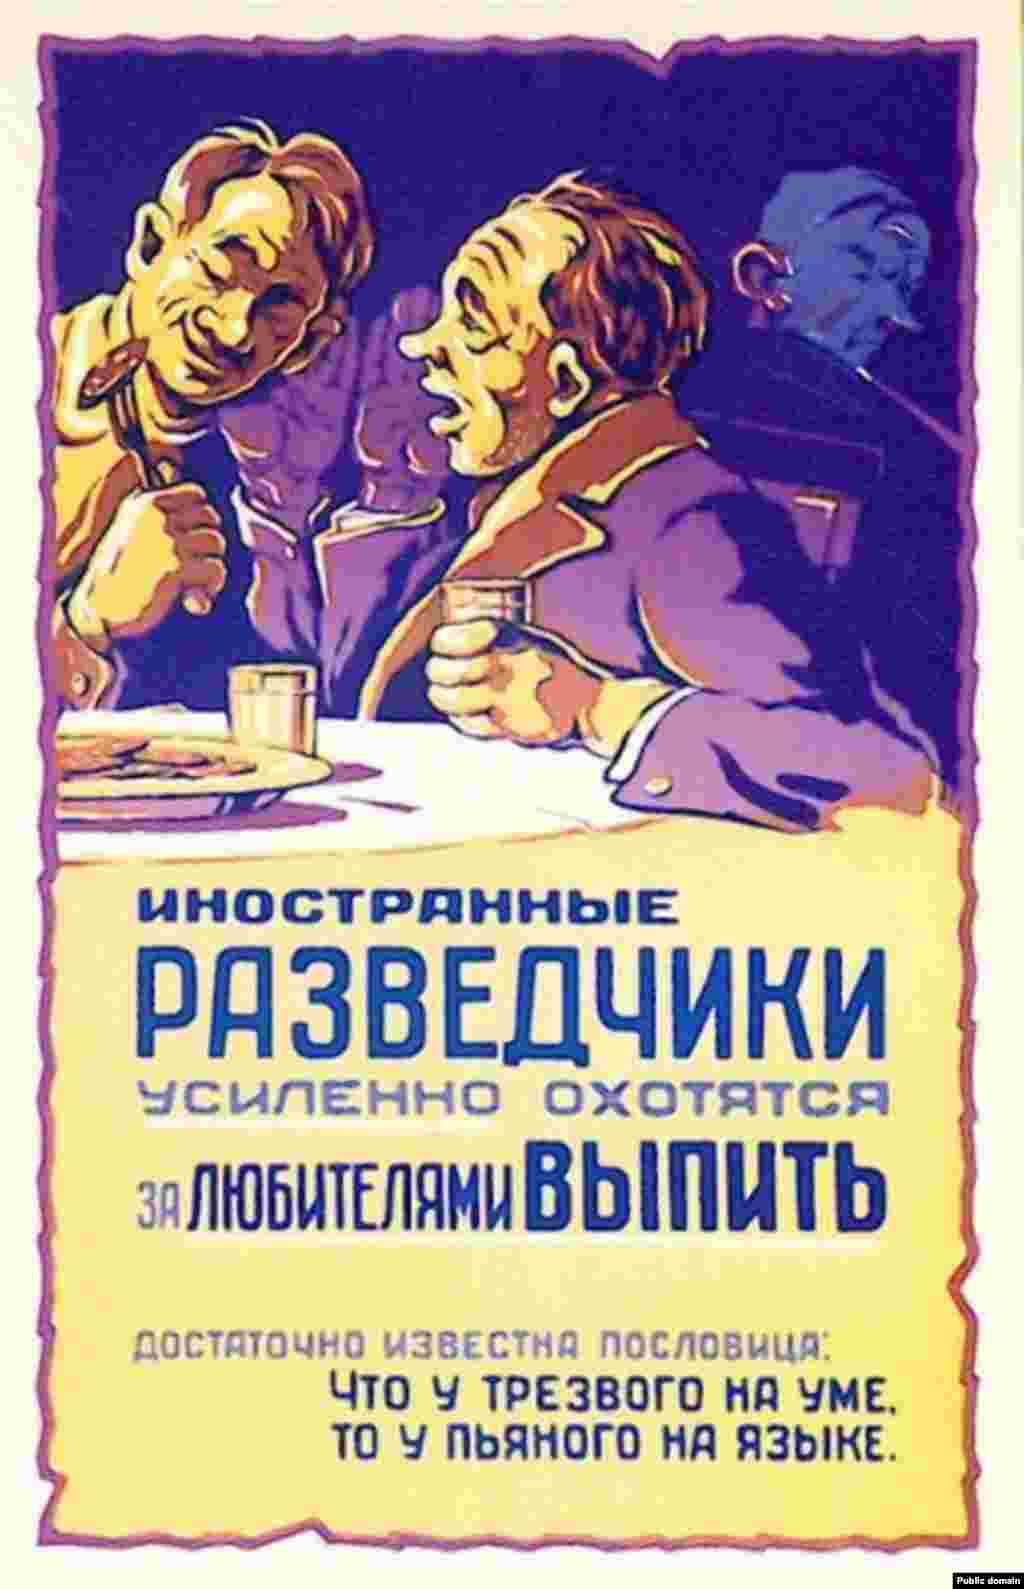 Плакат 1959 года содержит предупреждение: &laquo;Иностранные разведчики усиленно охотятся за любителями выпить&raquo;.